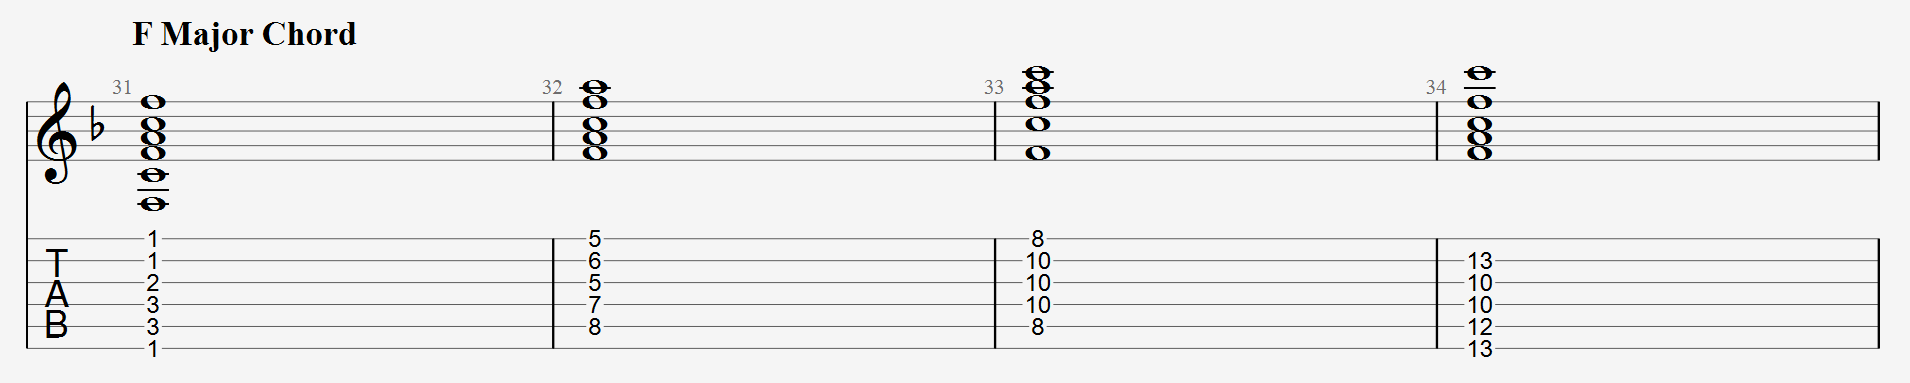 F major chord shapes